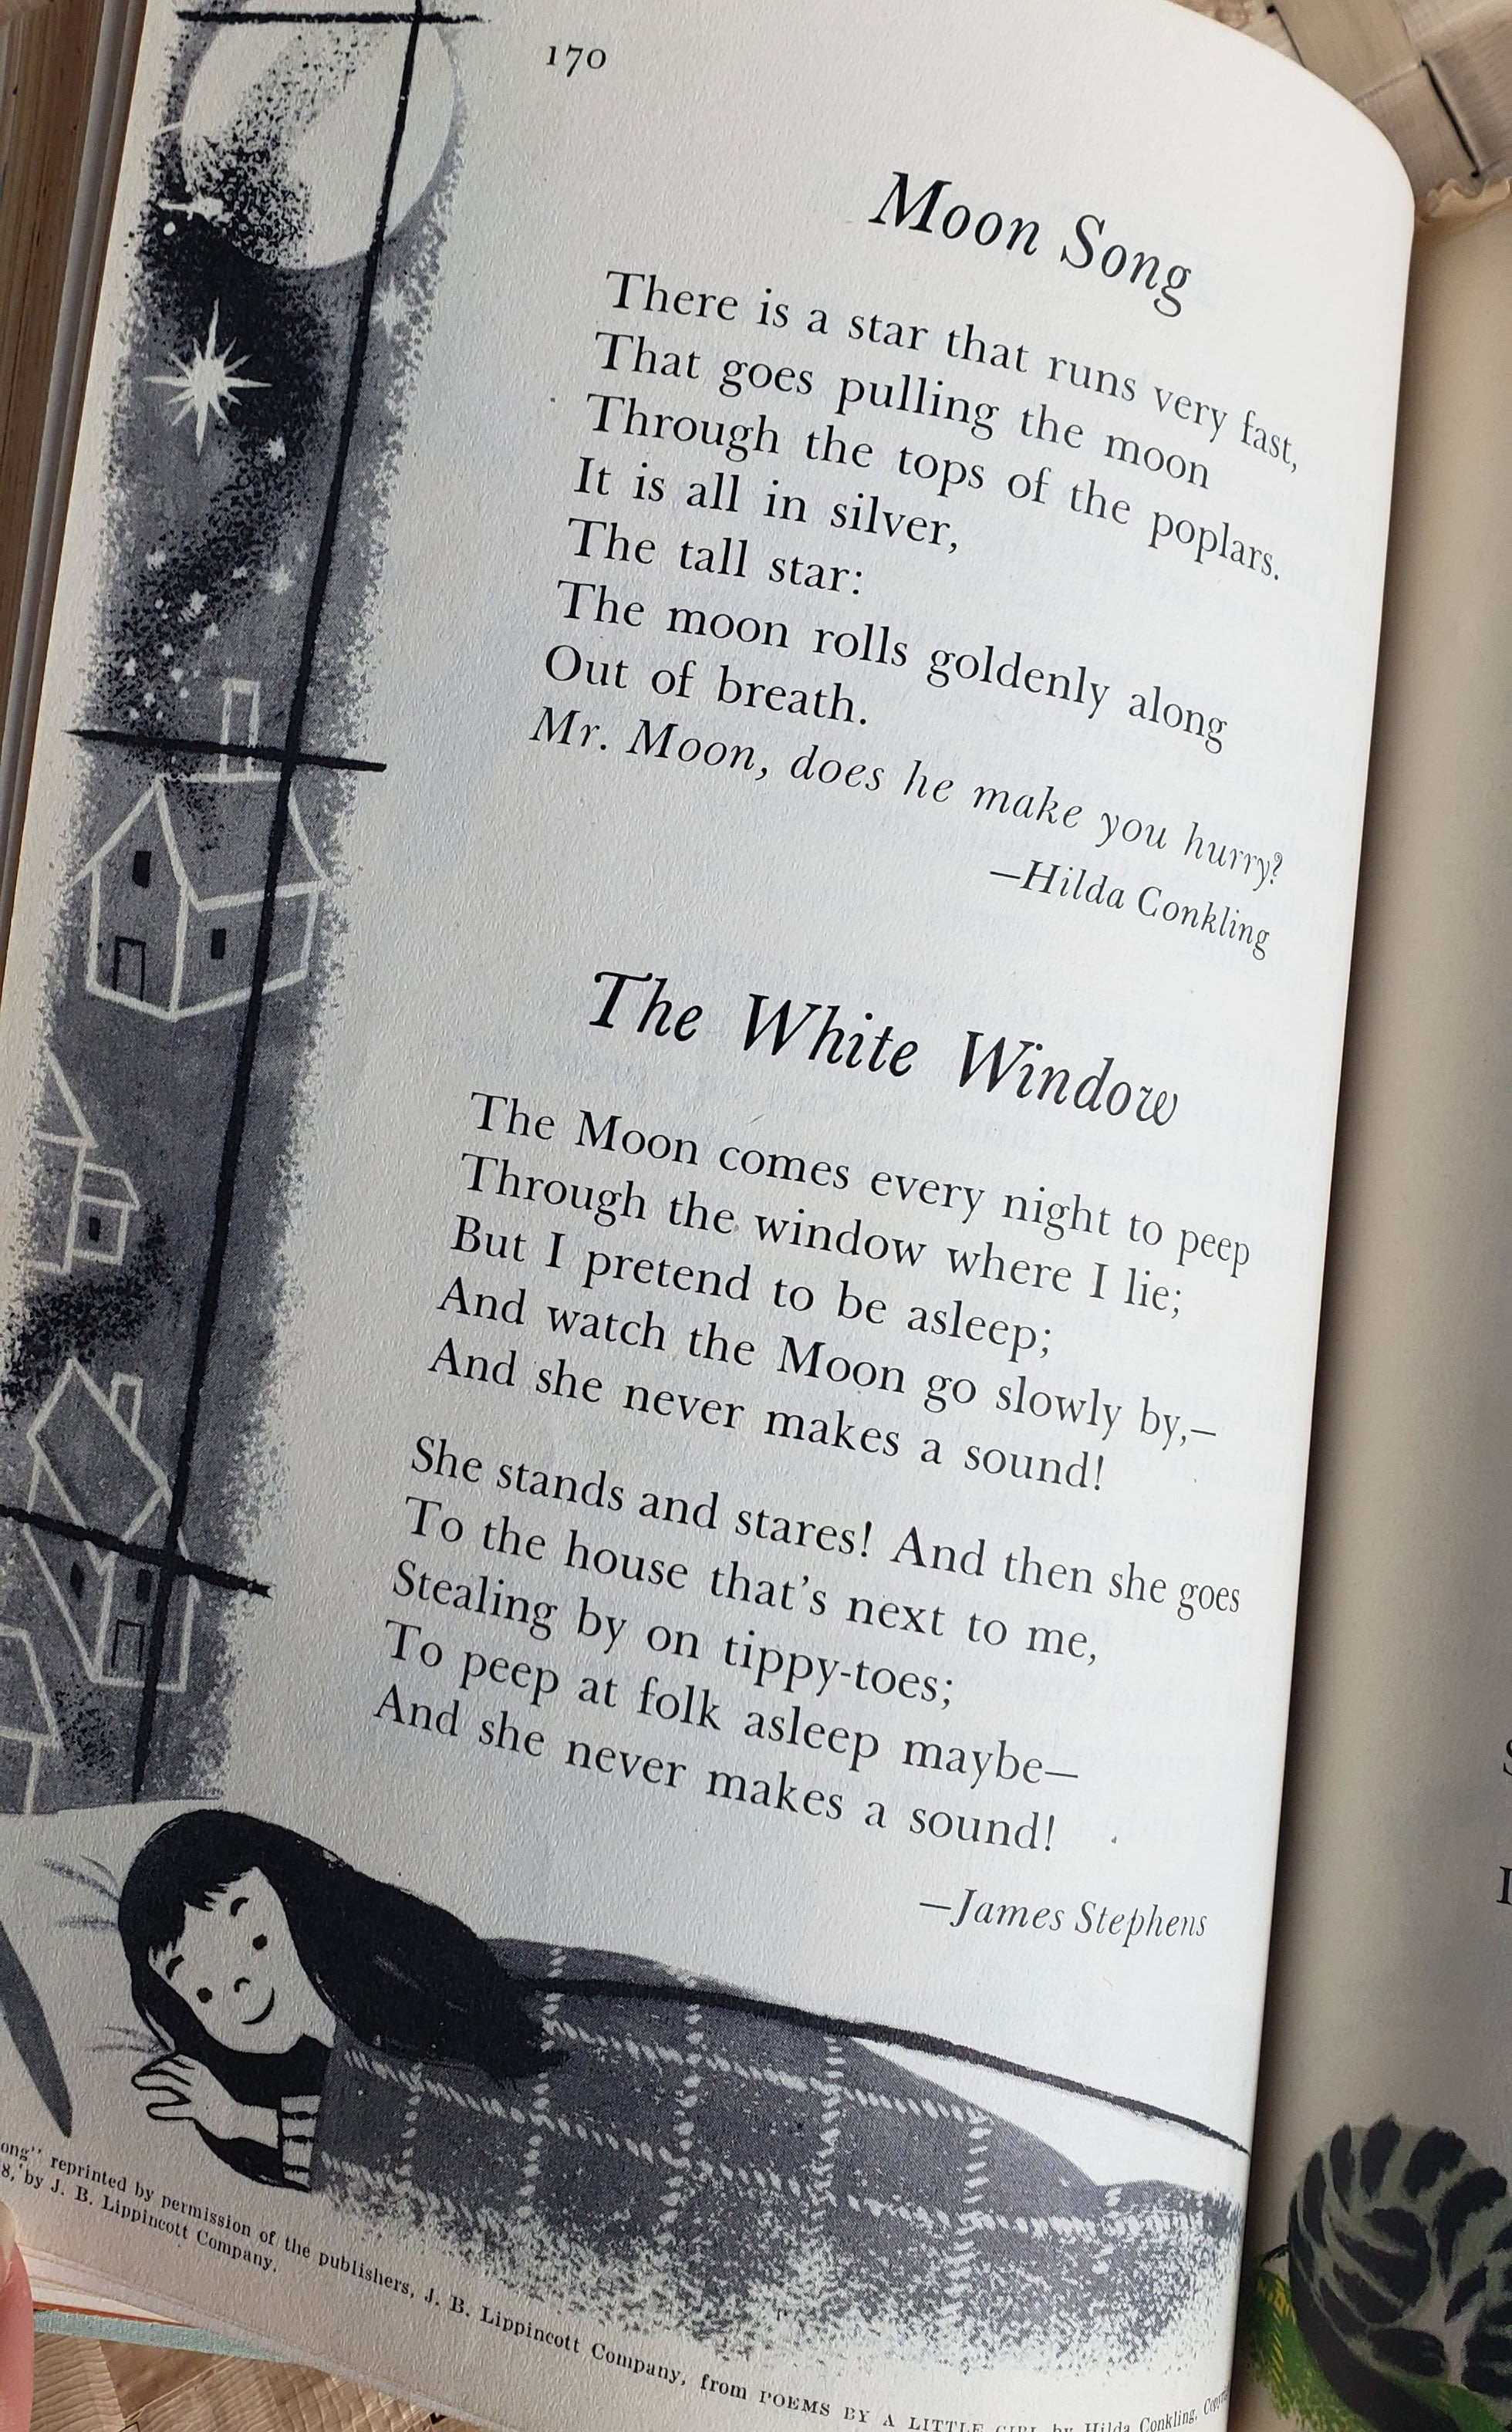 Rare Vintage Magic Carpet Children's Book (Copyright 1954)